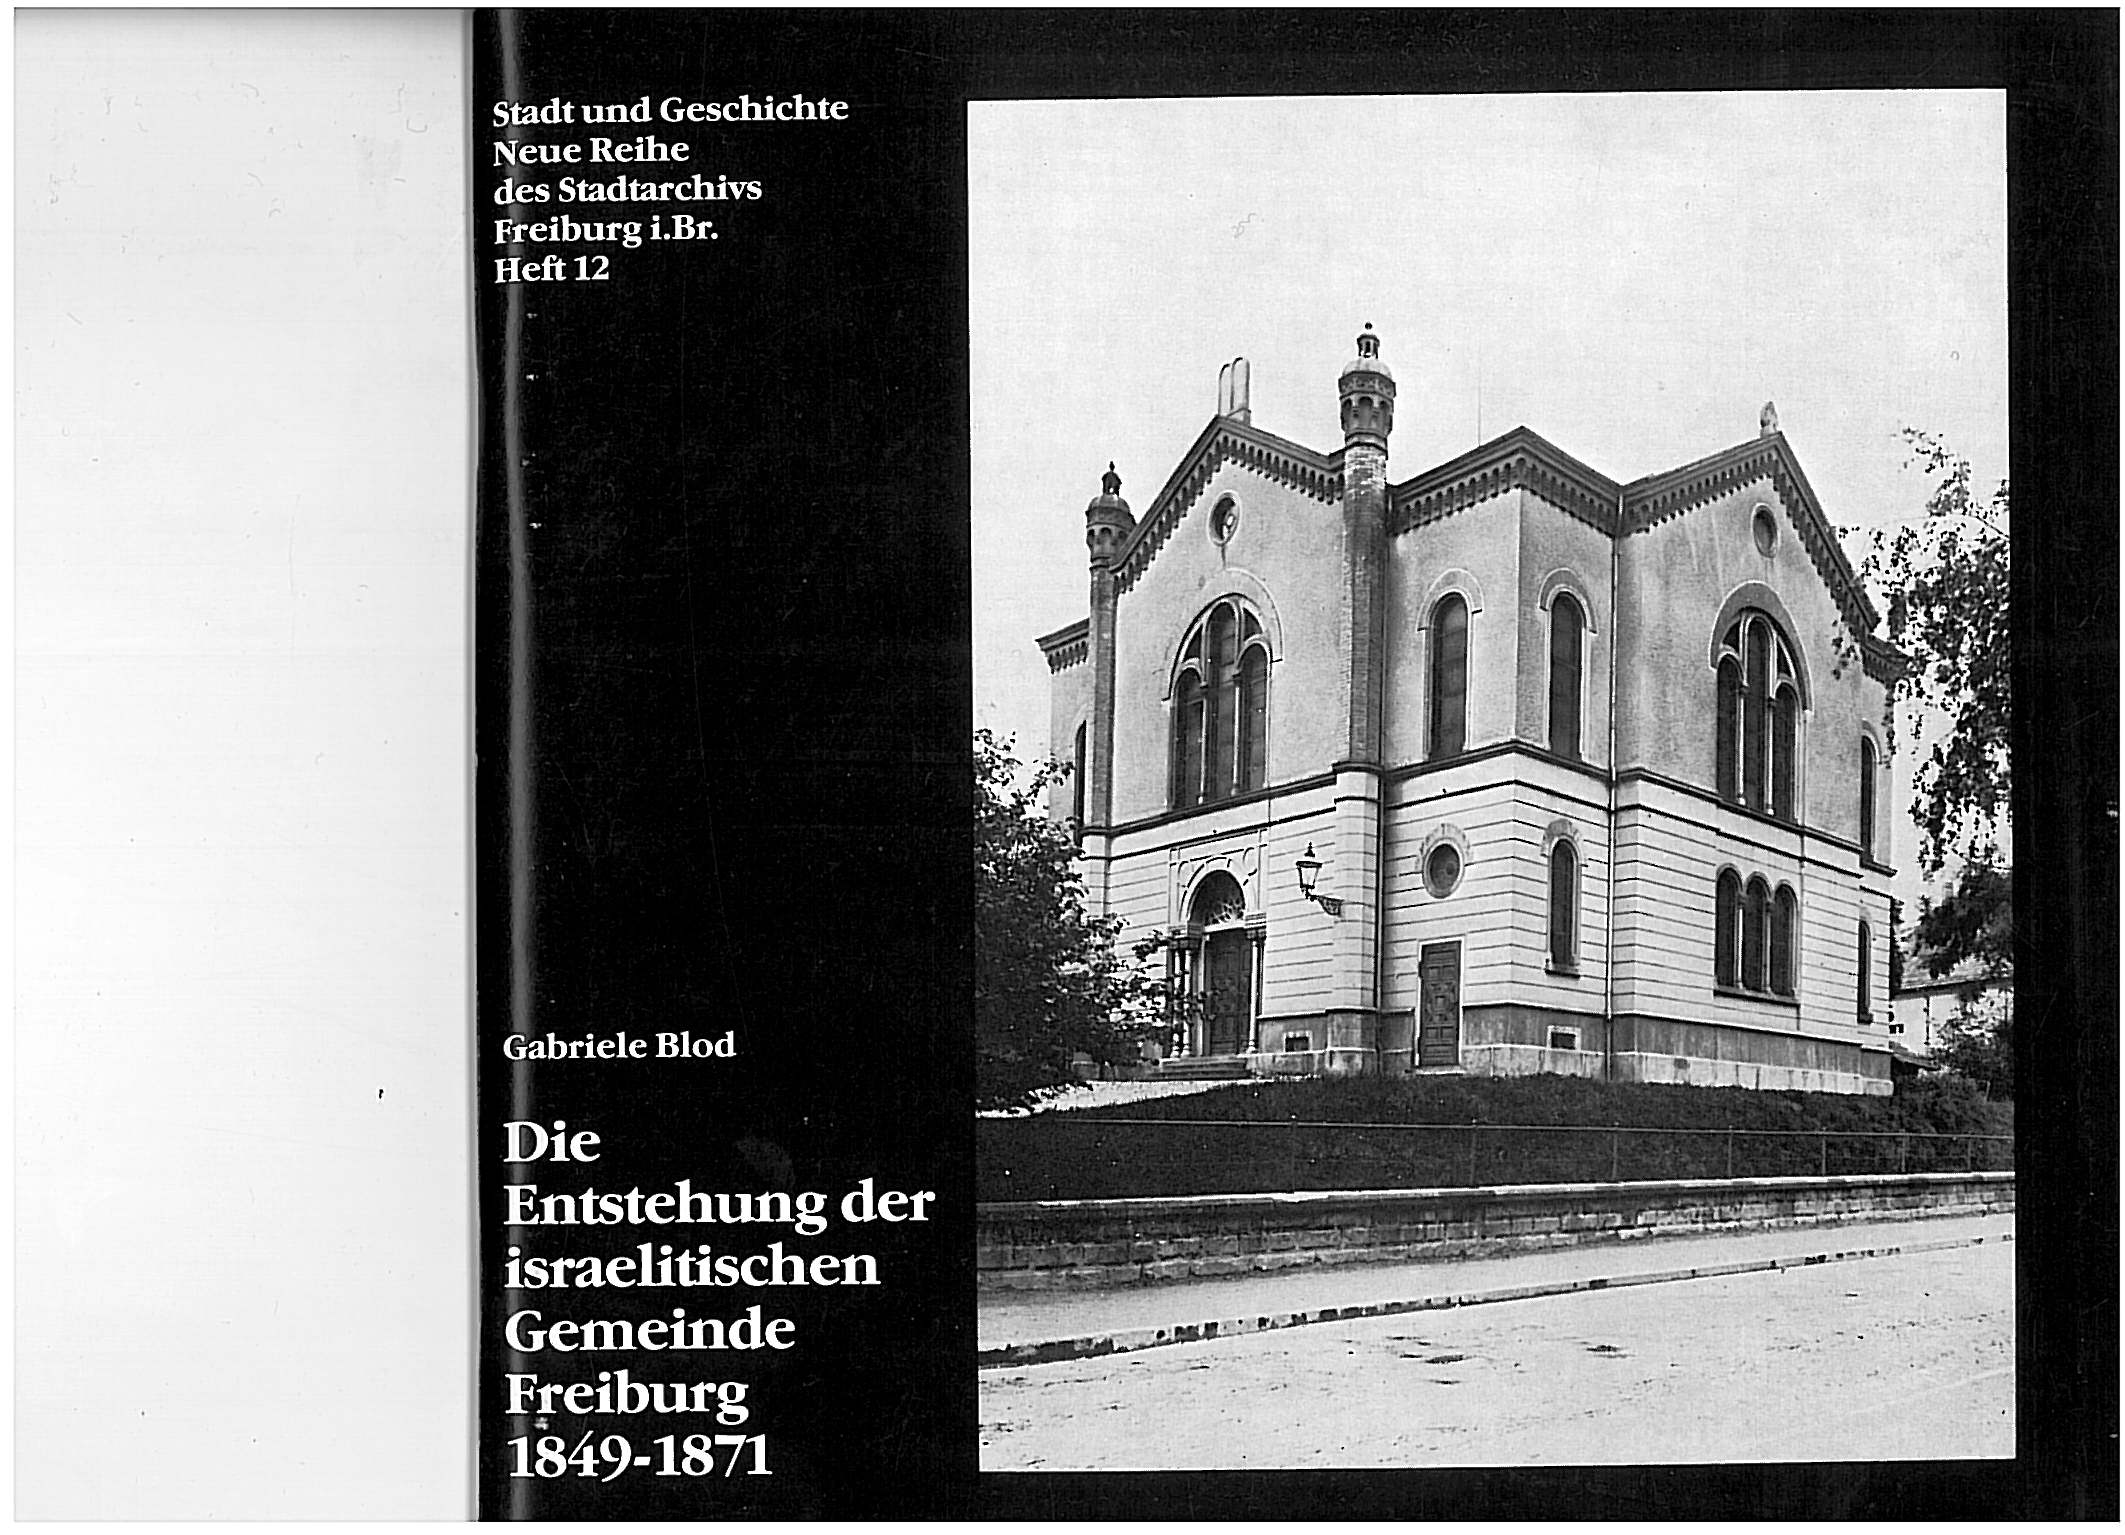 Alte Freiburger Synagoge